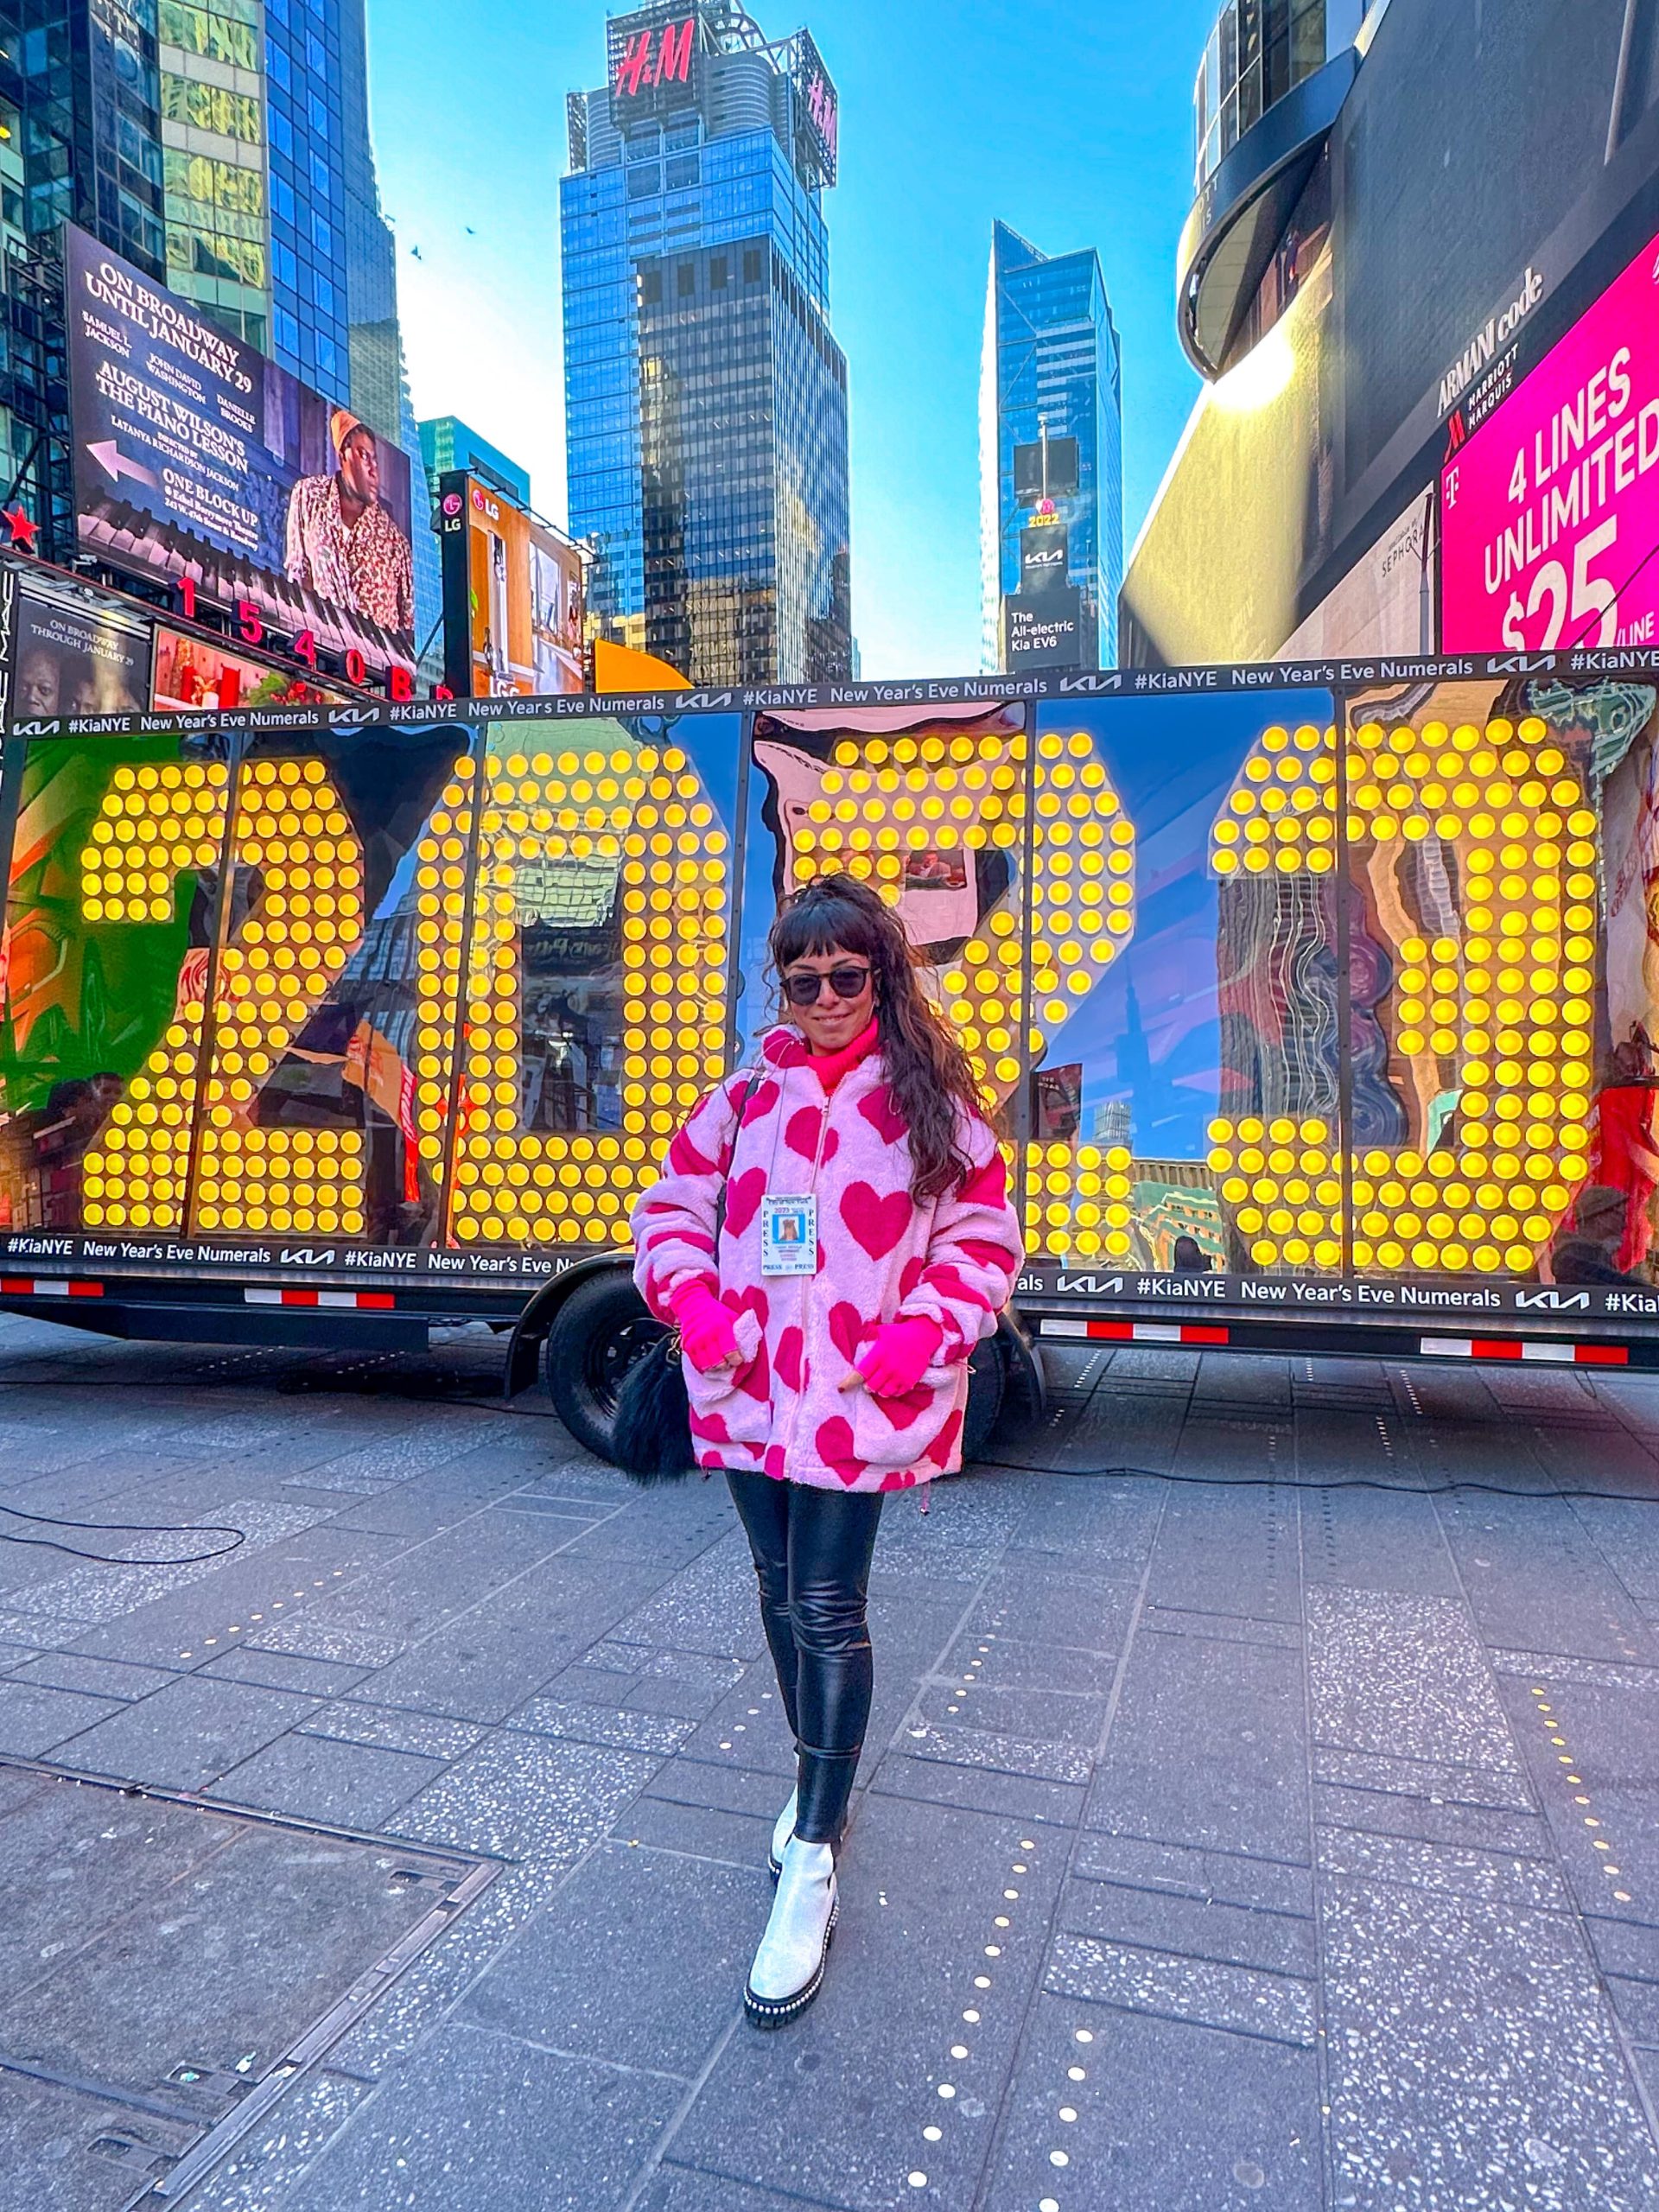 Capodanno a Times Square: cose importanti da sapere